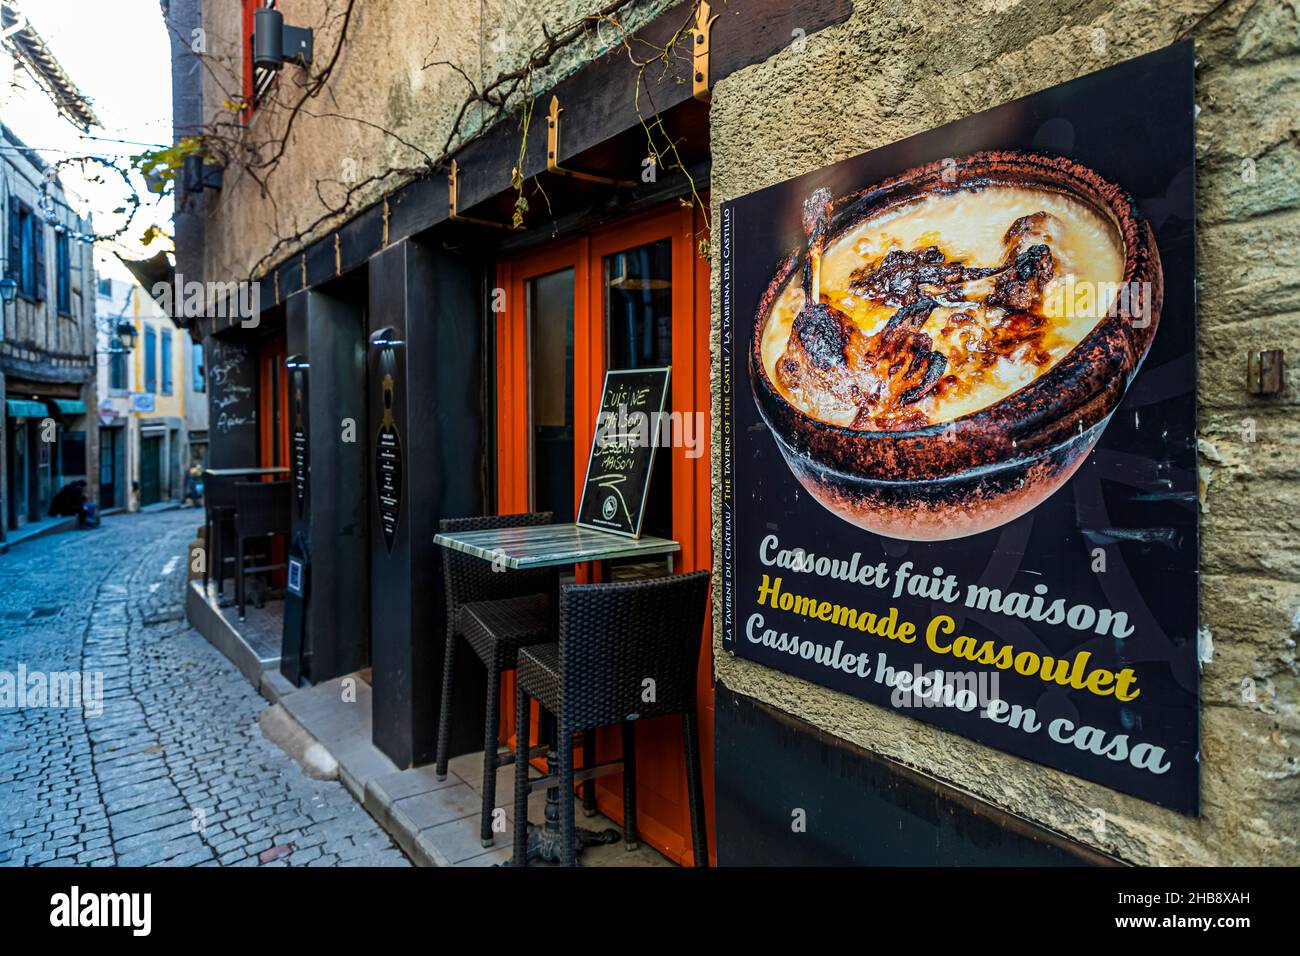 Cassoulet Restaurant in Carcassonne, France Stock Photo